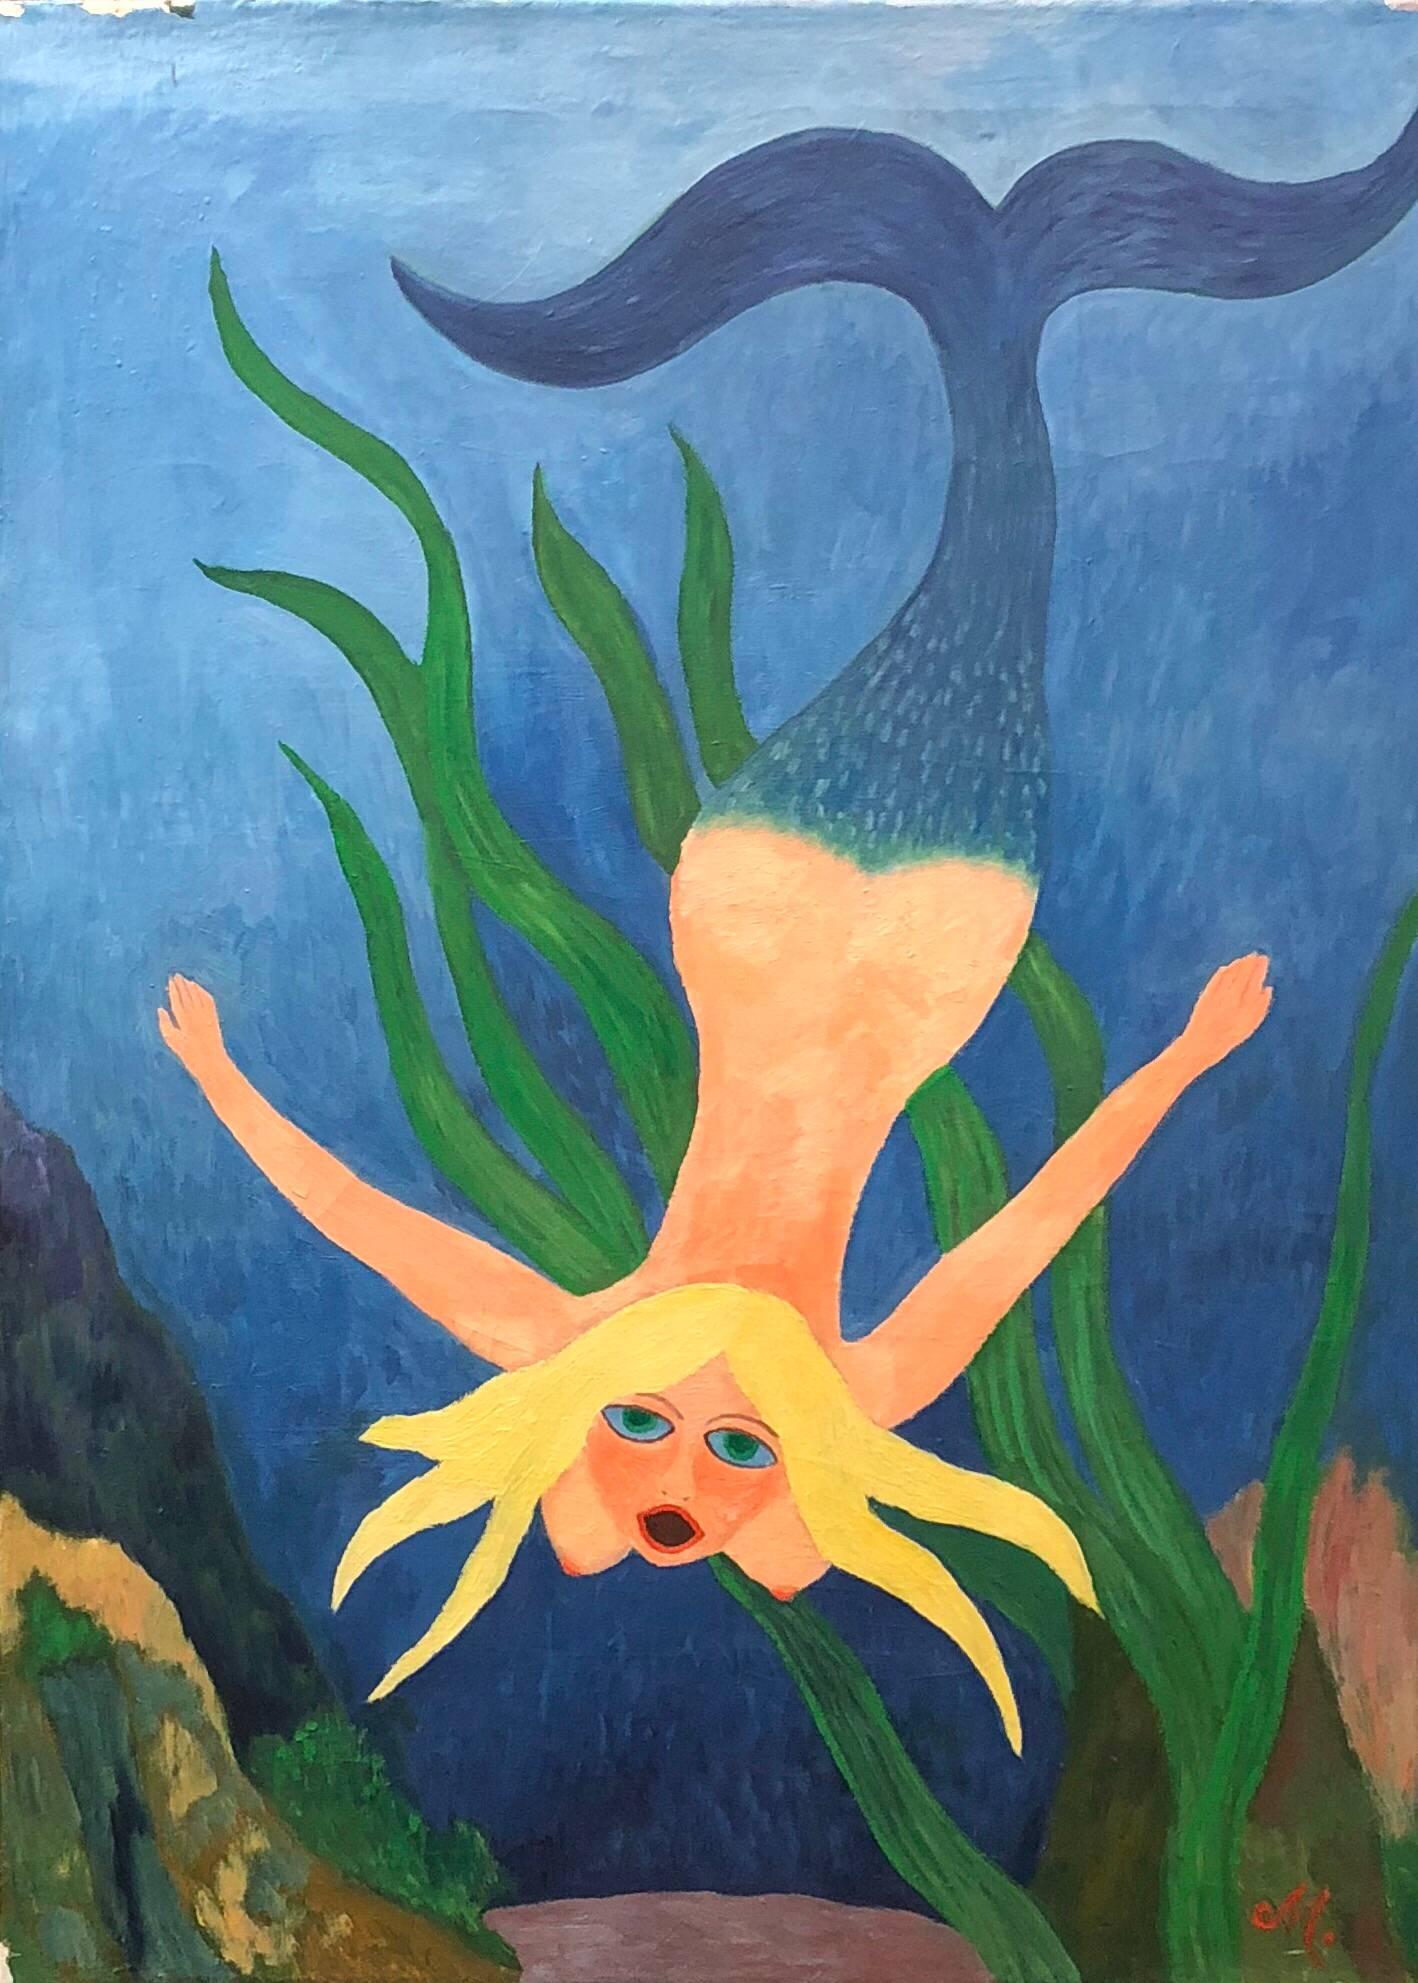 Figurative Painting Hajo Malek - Mermaid nue sous la mer, peinture d'art populaire allemand d'un outsider